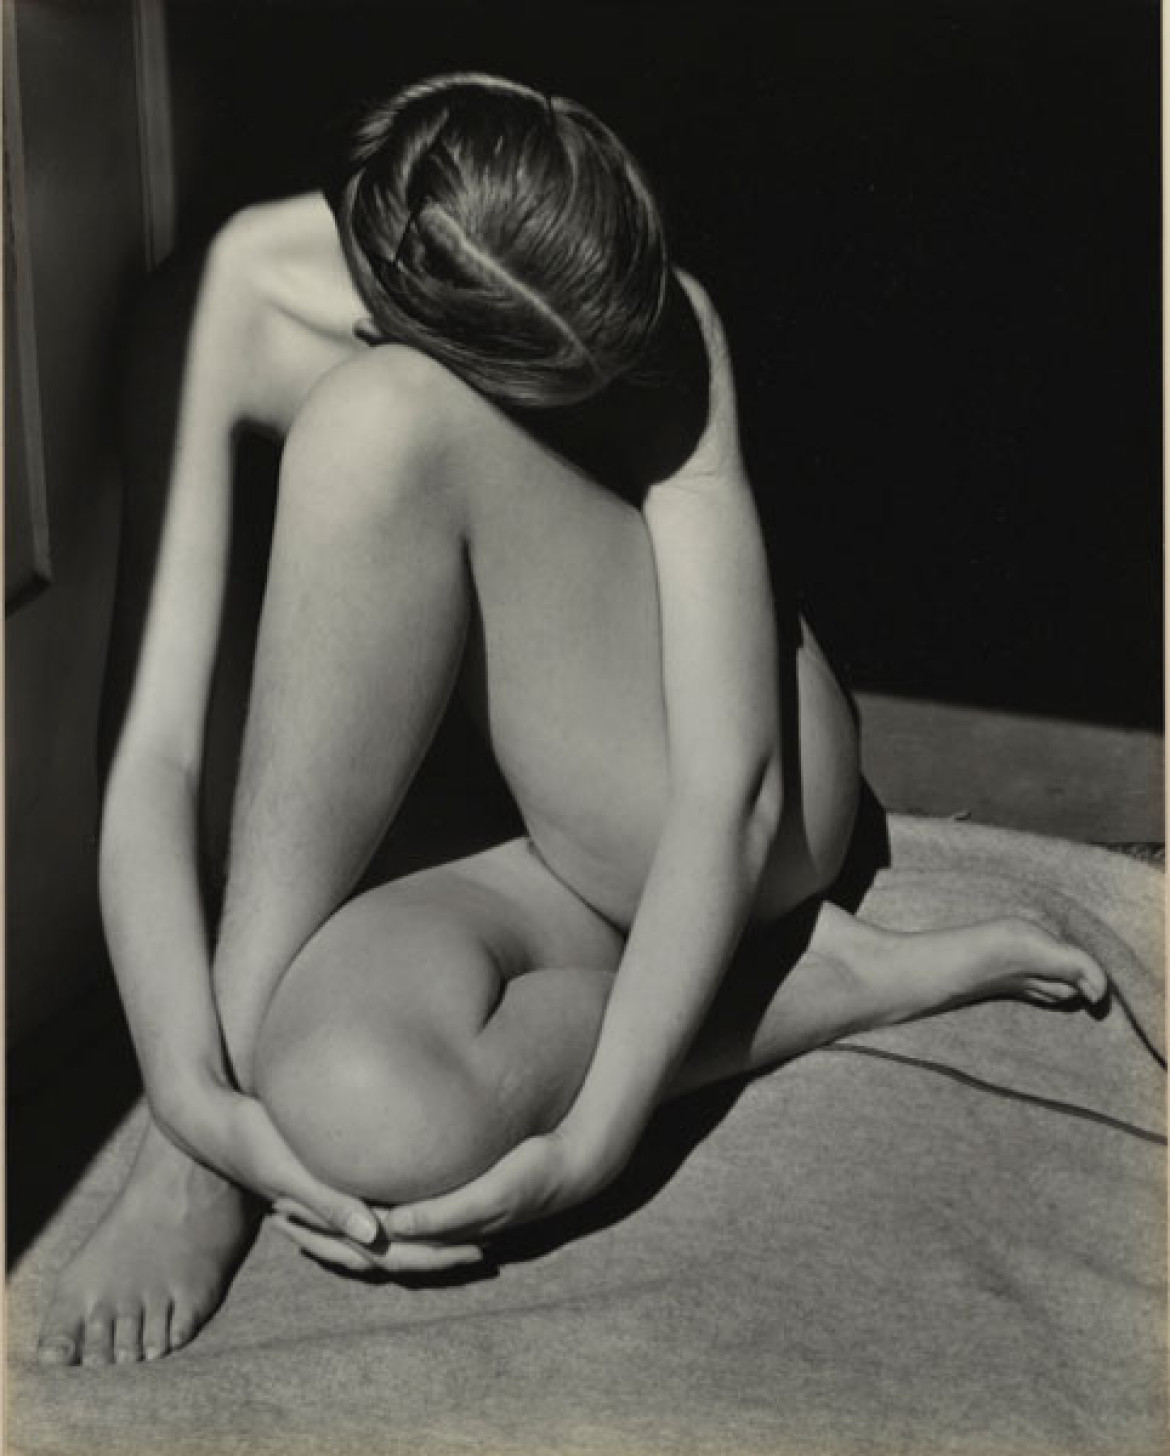 Edward Weston, Charis, Santa Monica, 1936, dzięki uprzejmości Sotheby's